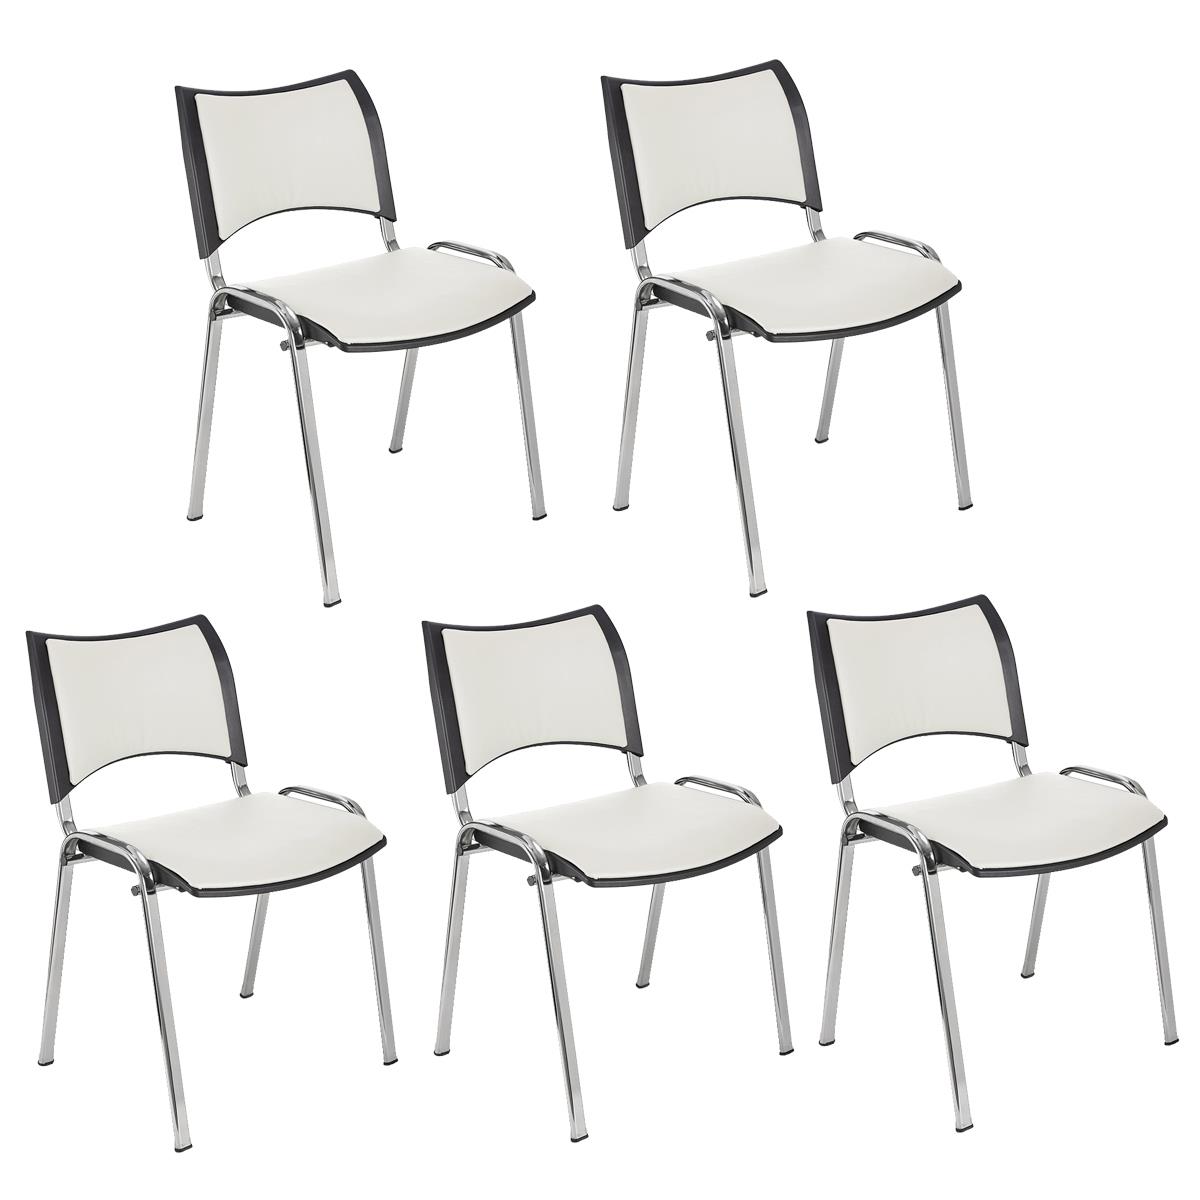 Lote 5 Cadeiras de Visita ROMEL PELE, Prática e Empilhável, Pernas Cromadas, Branco